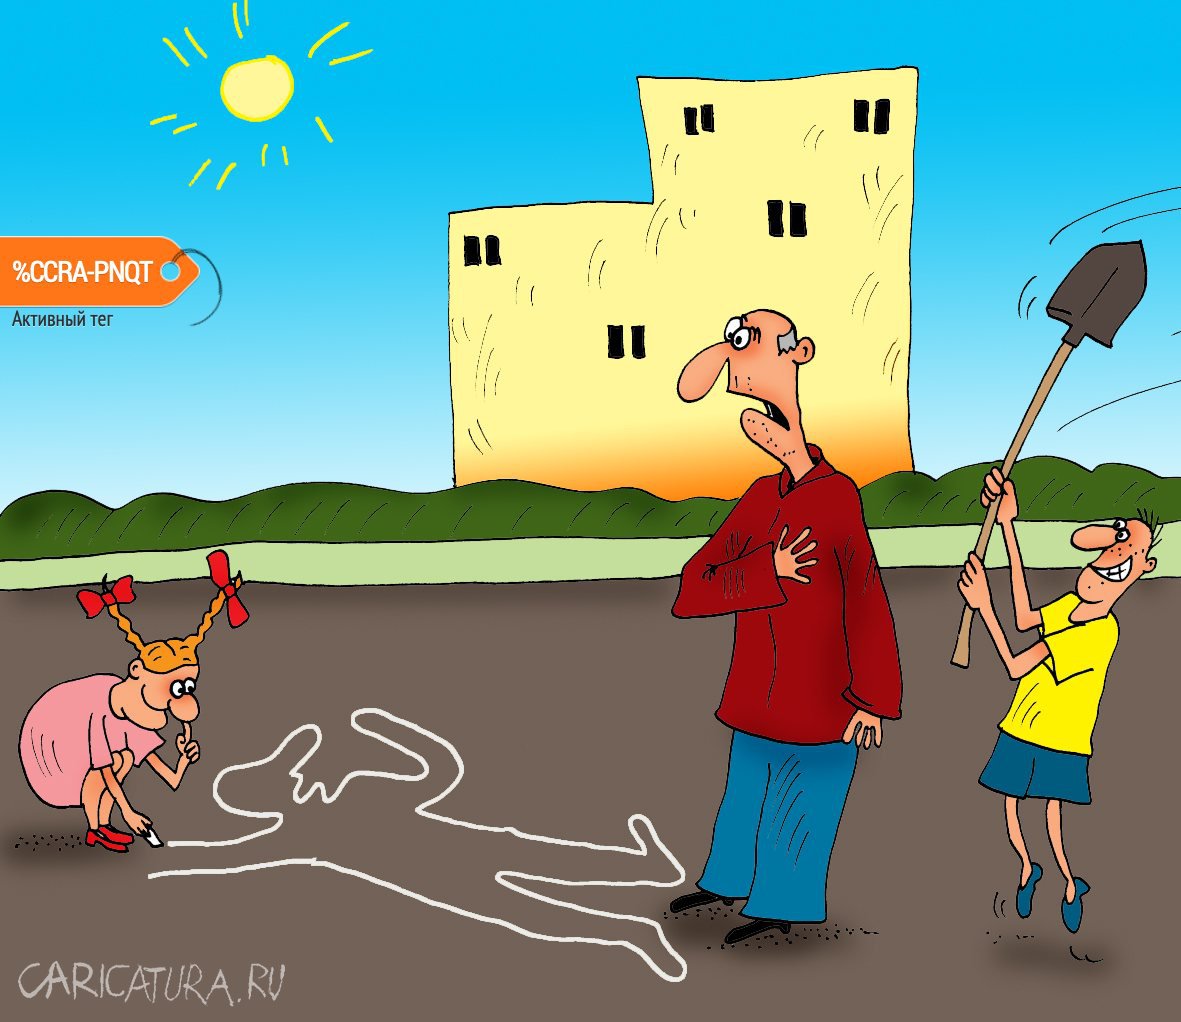 Карикатура "Игры", Алексей Булатов